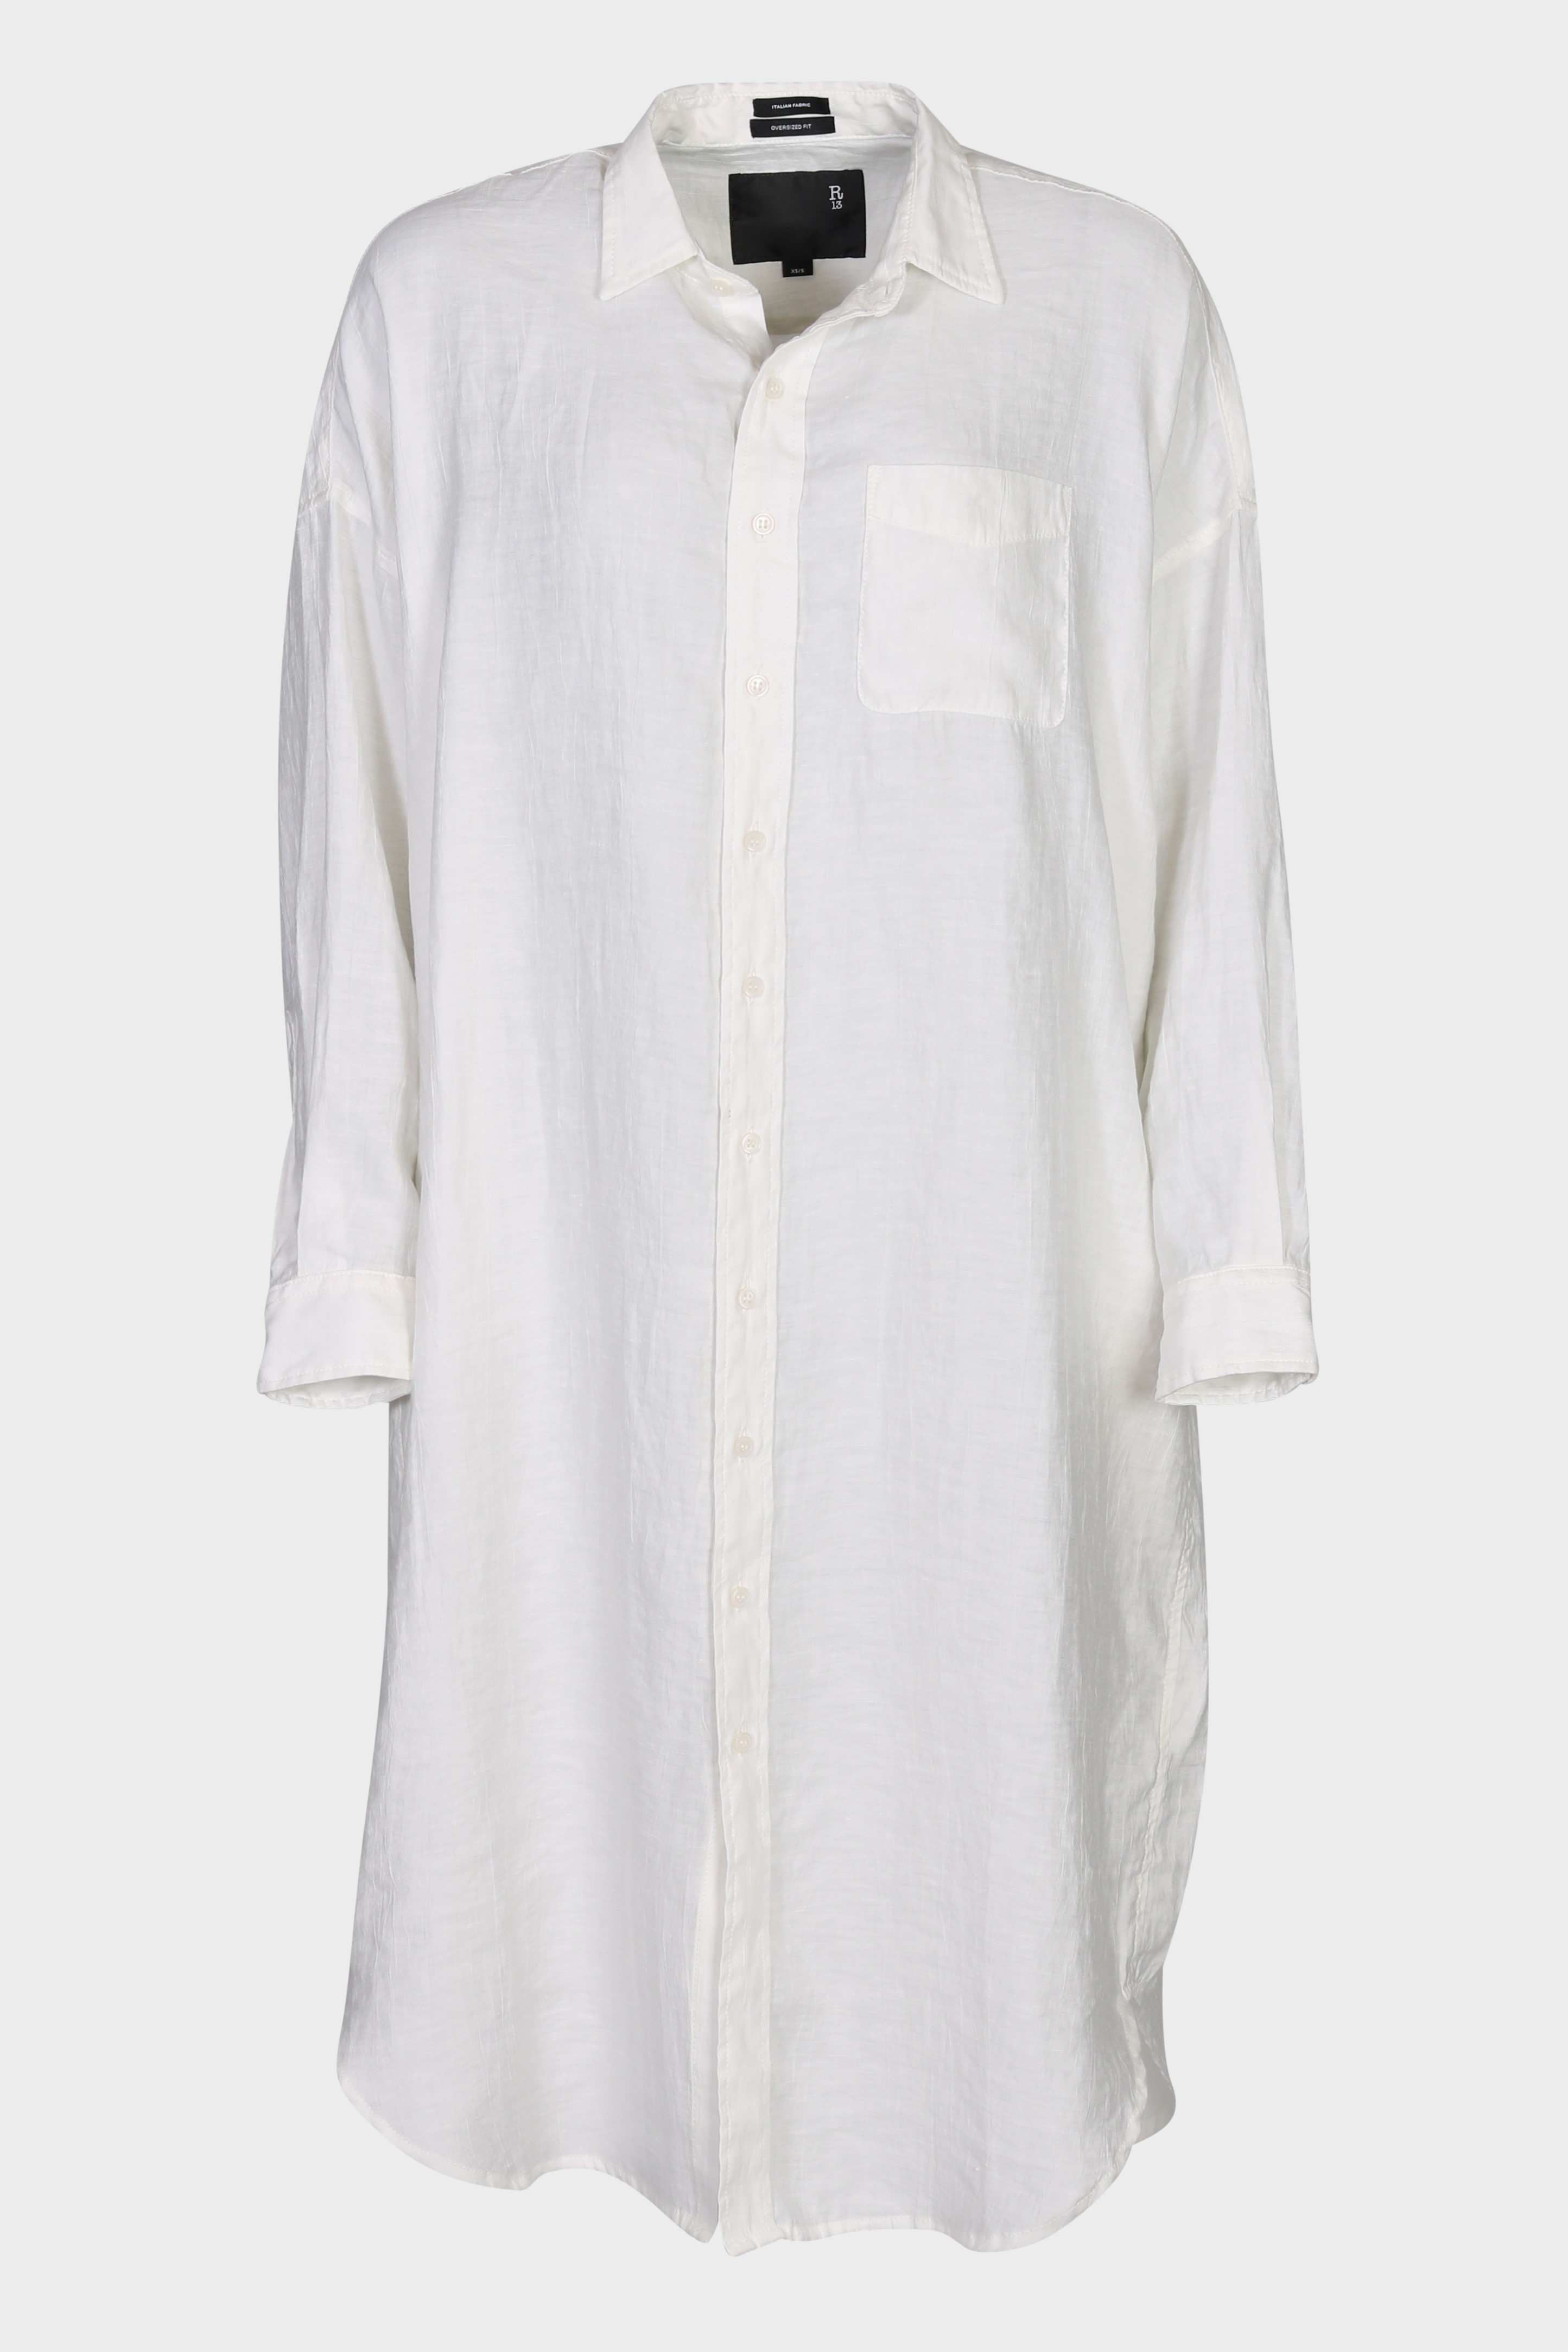 R13 Jumbo Shirt Dress in White